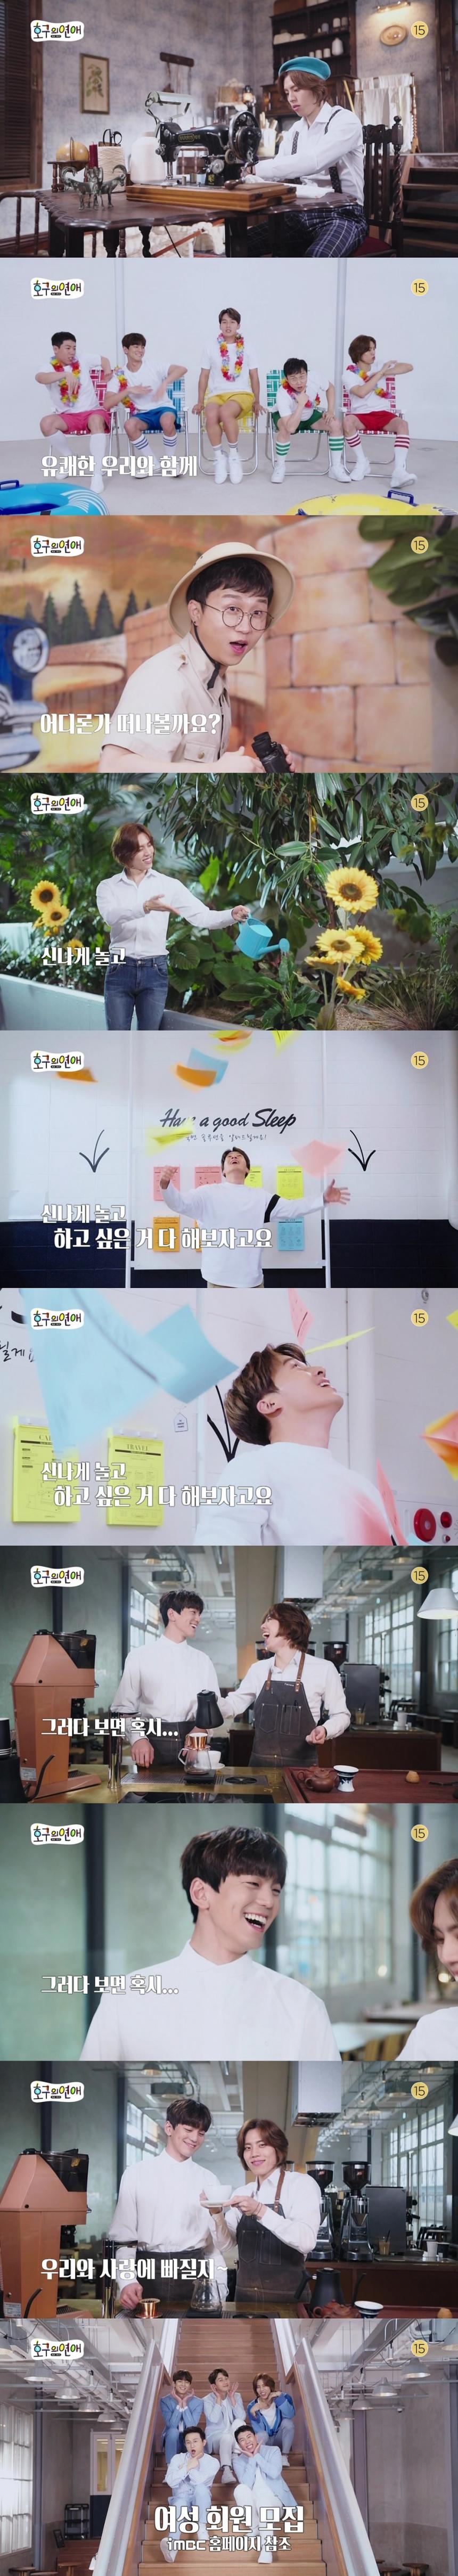 ‘호구의 연애’ 티저 영상 캡처 / MBC